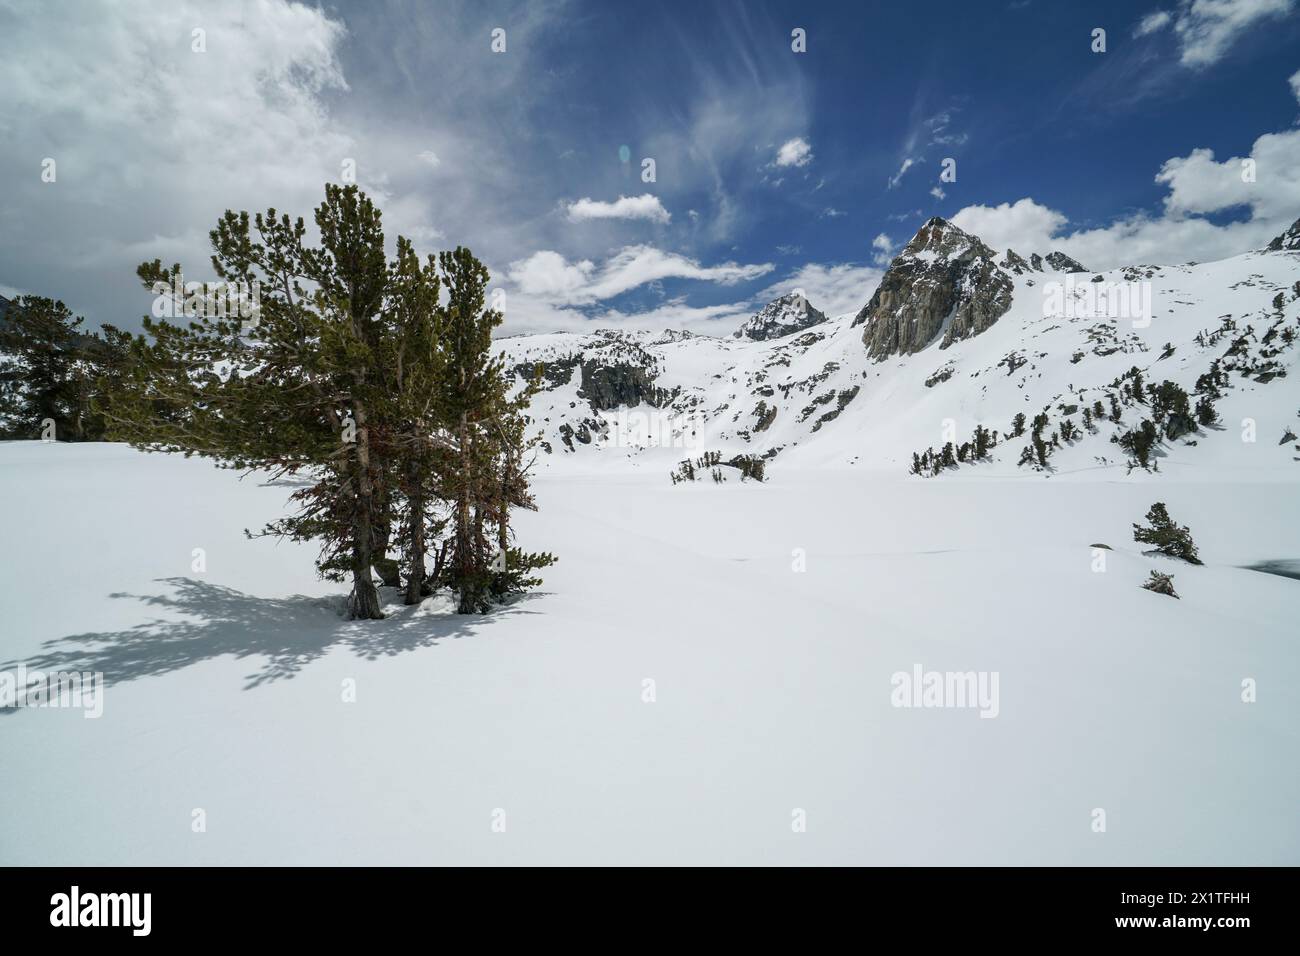 Pacific Crest Trail. Un arbre solitaire se dresse dans la neige devant une chaîne de montagnes. La scène est paisible et sereine ; avec le paysage enneigé cr Banque D'Images